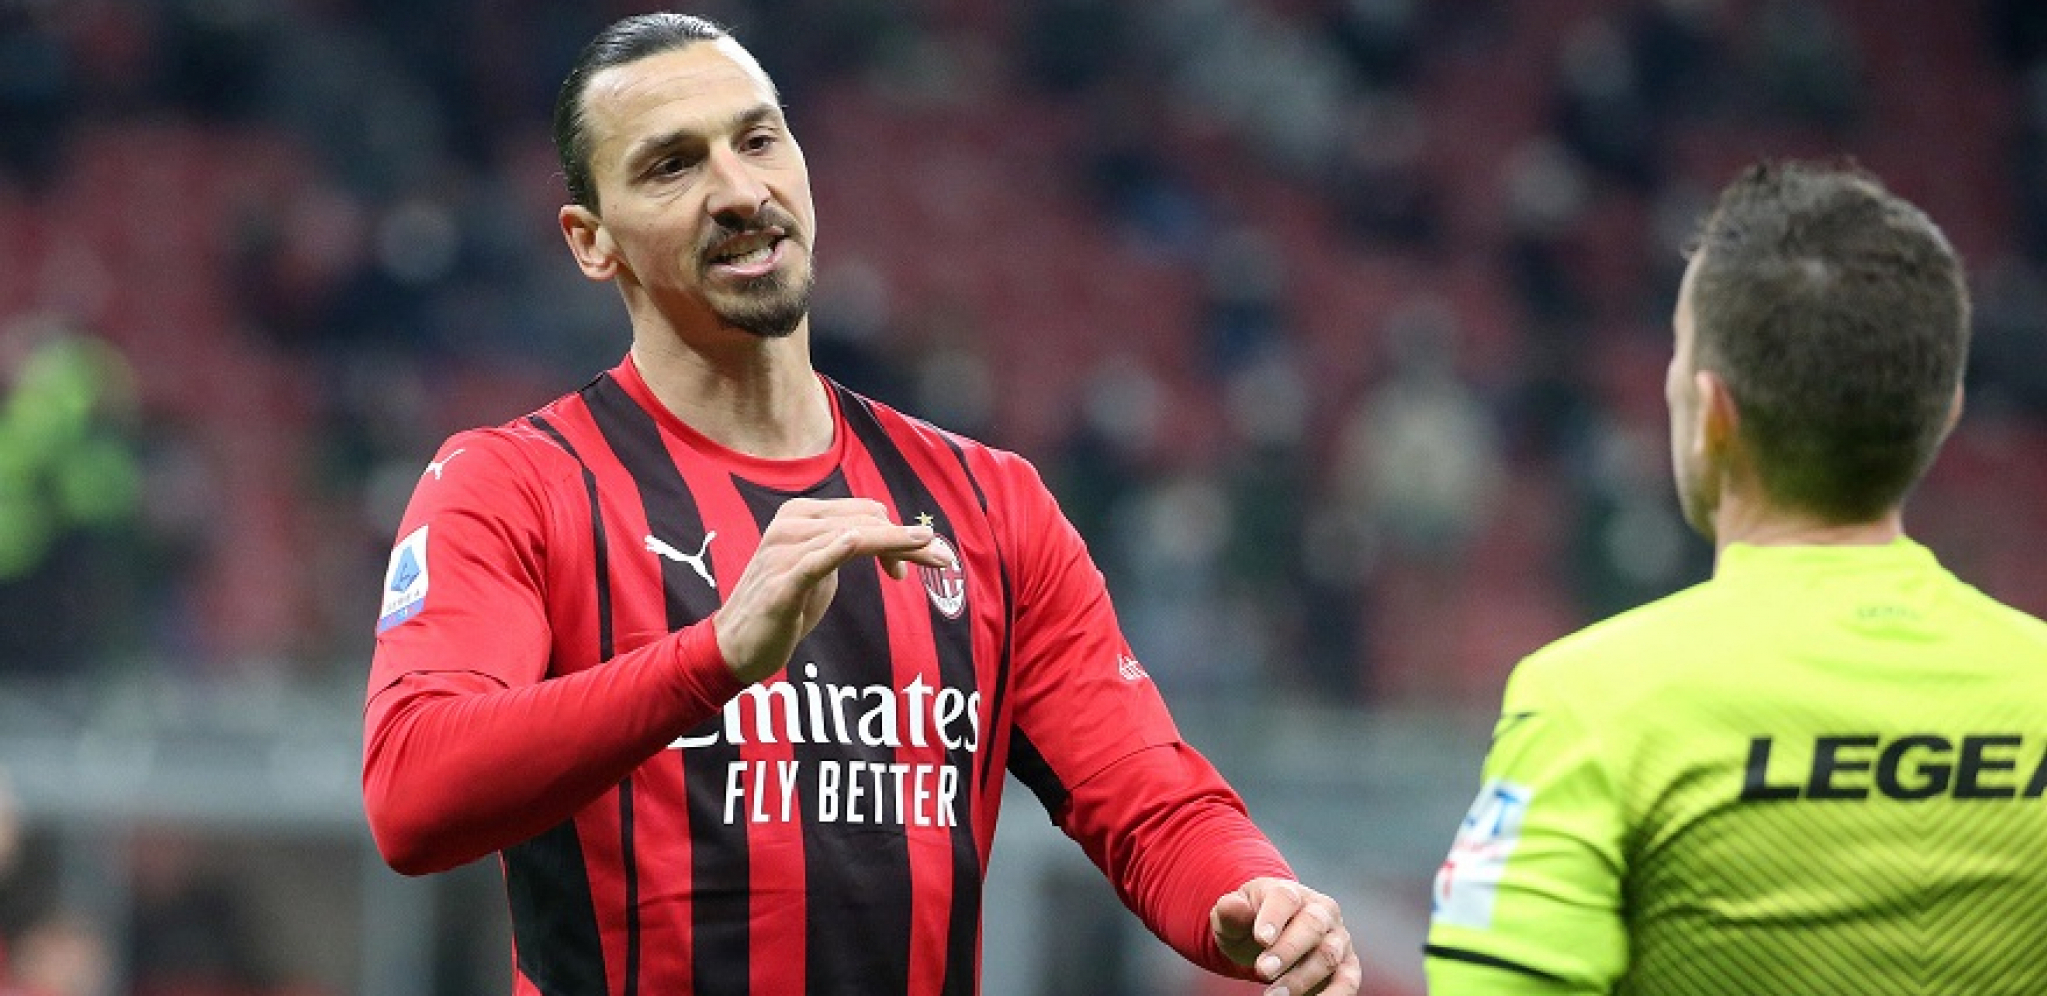 ITALIJA U ŠOKU Svi pričaju o potezu Ibrahimovića, sada će mnogi promeniti mišljenje o njemu